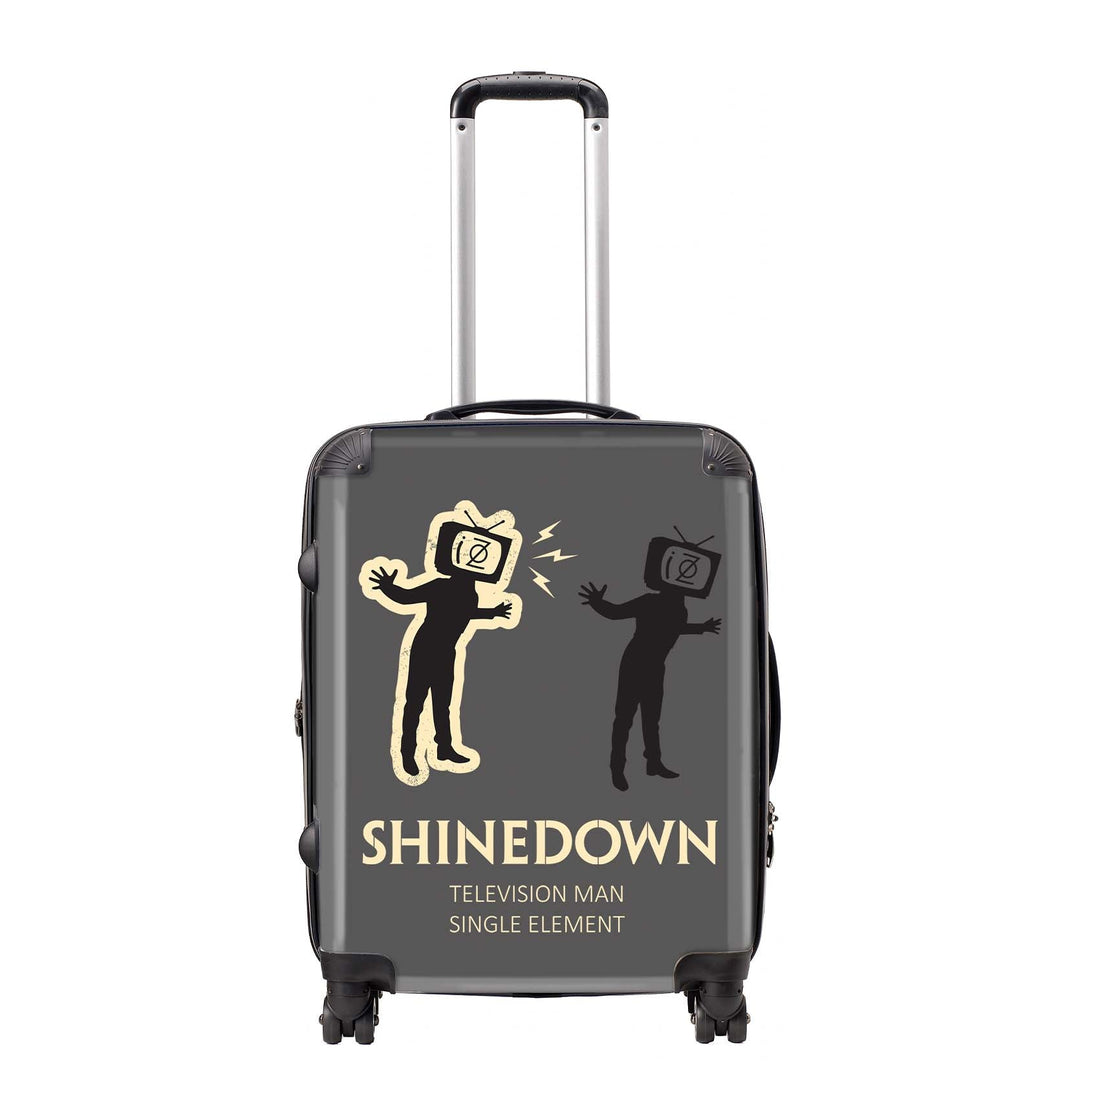 Rocksax Shinedown Travel Bag Luggage - TV